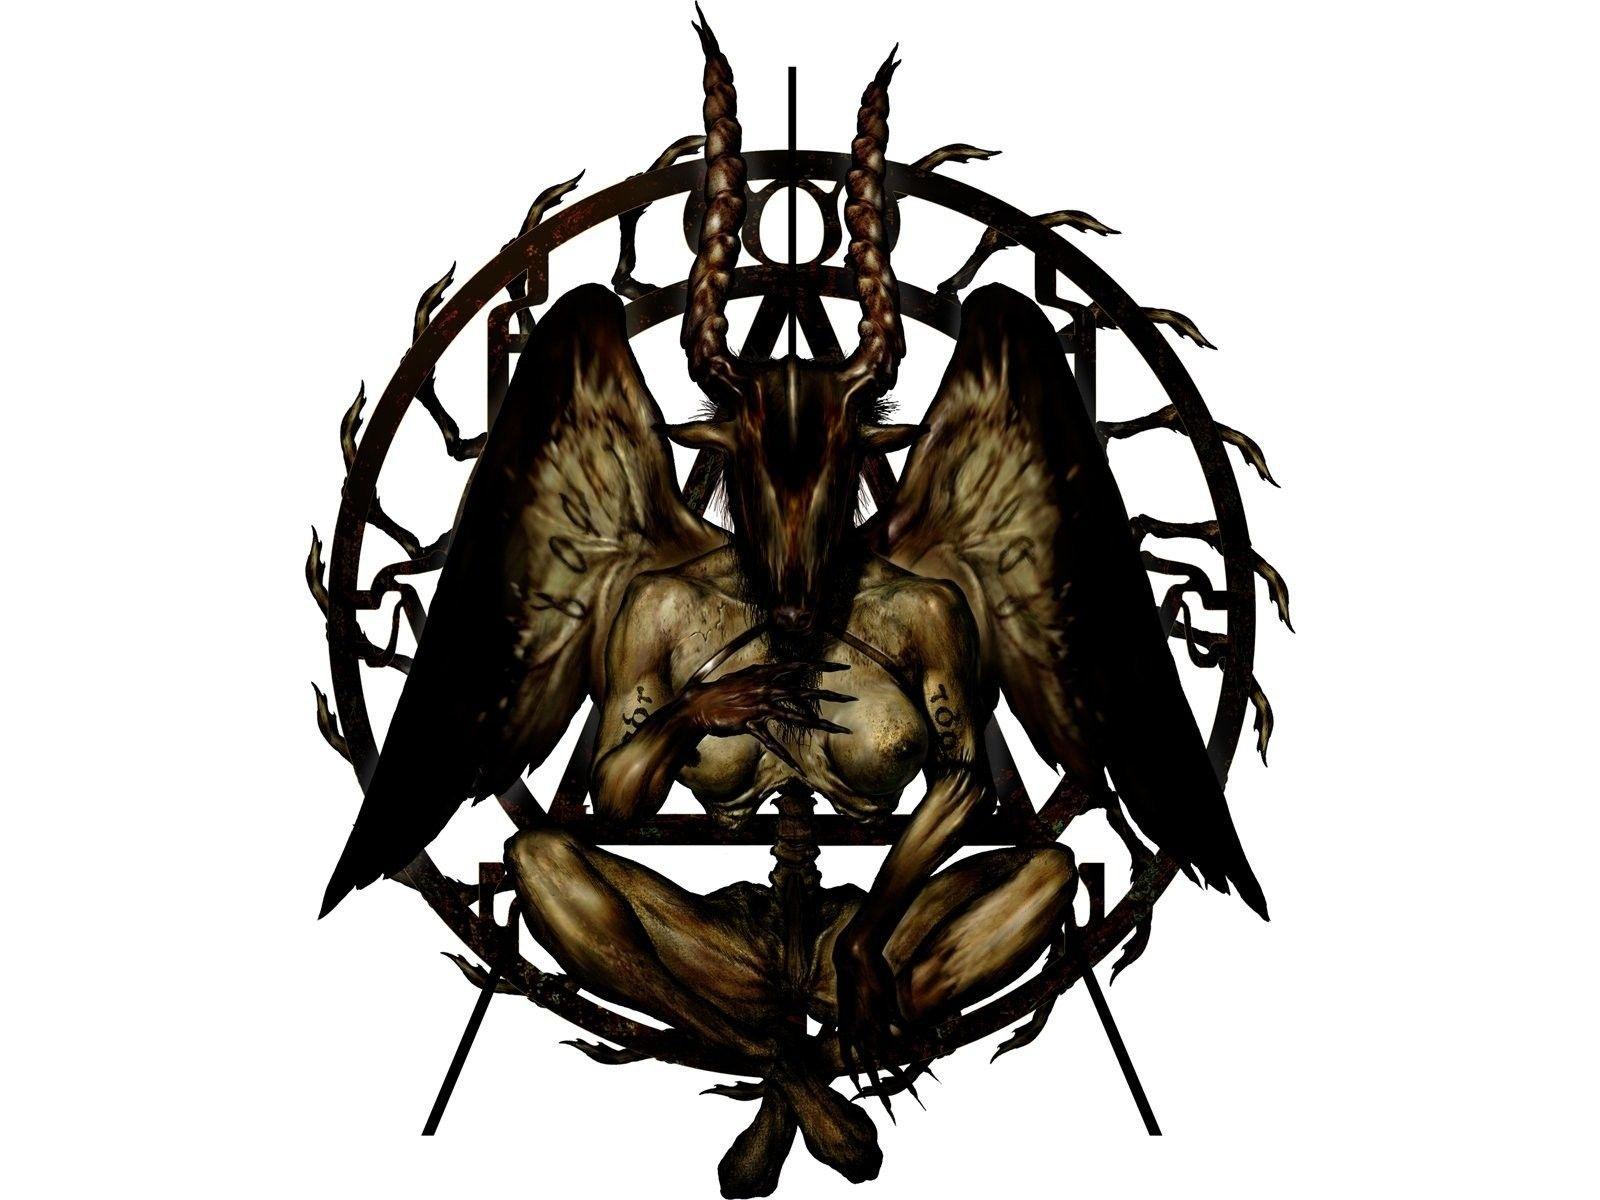 symbol horns devil baphomet satanic 1600x1200 wallpaper High Quality